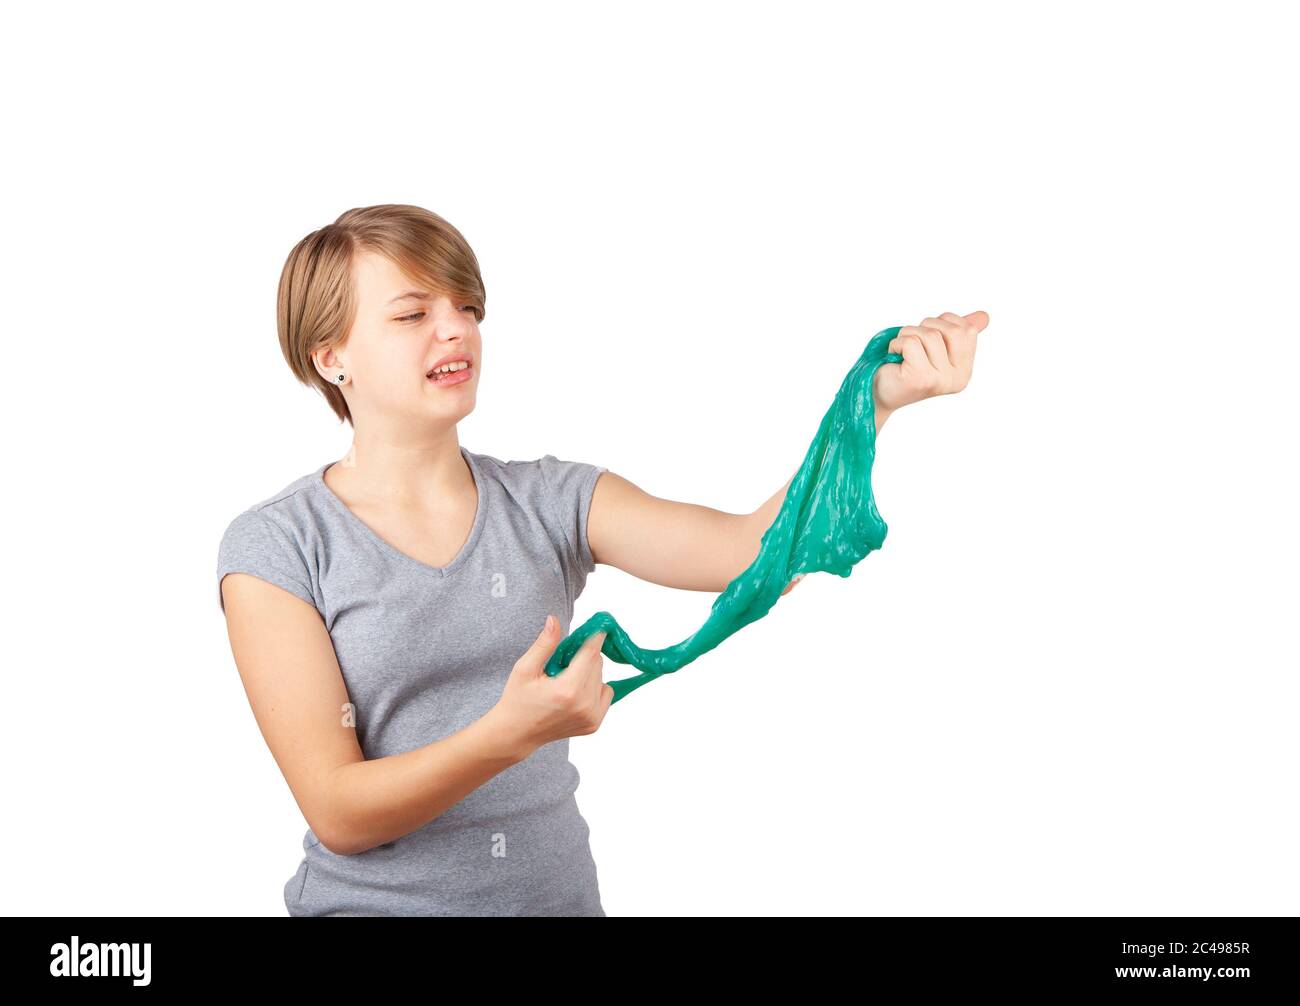 La limo es asquerosa: Una chica joven que se queja mientras aprieta una limo verde parece una moza. Estudio aislado sobre fondo blanco. Foto de stock